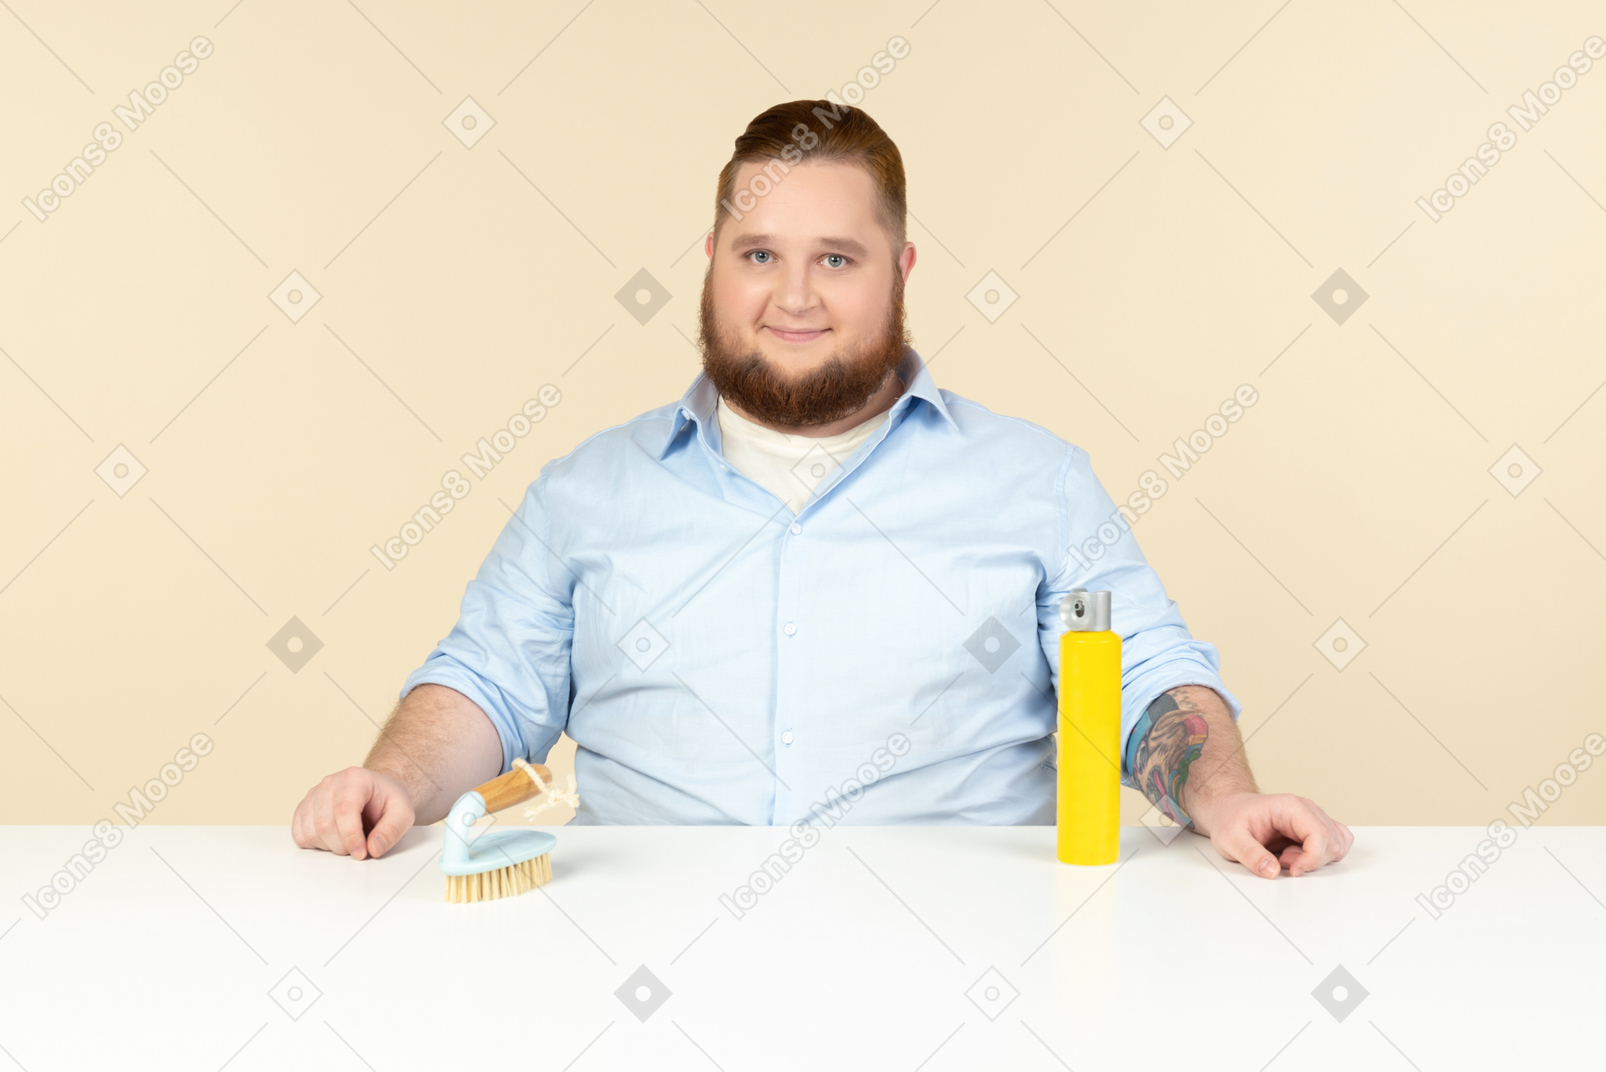 Zufrieden aussehender junger übergewichtiger hausmann sitzt am tisch mit reinigungsspray und pinsel drauf